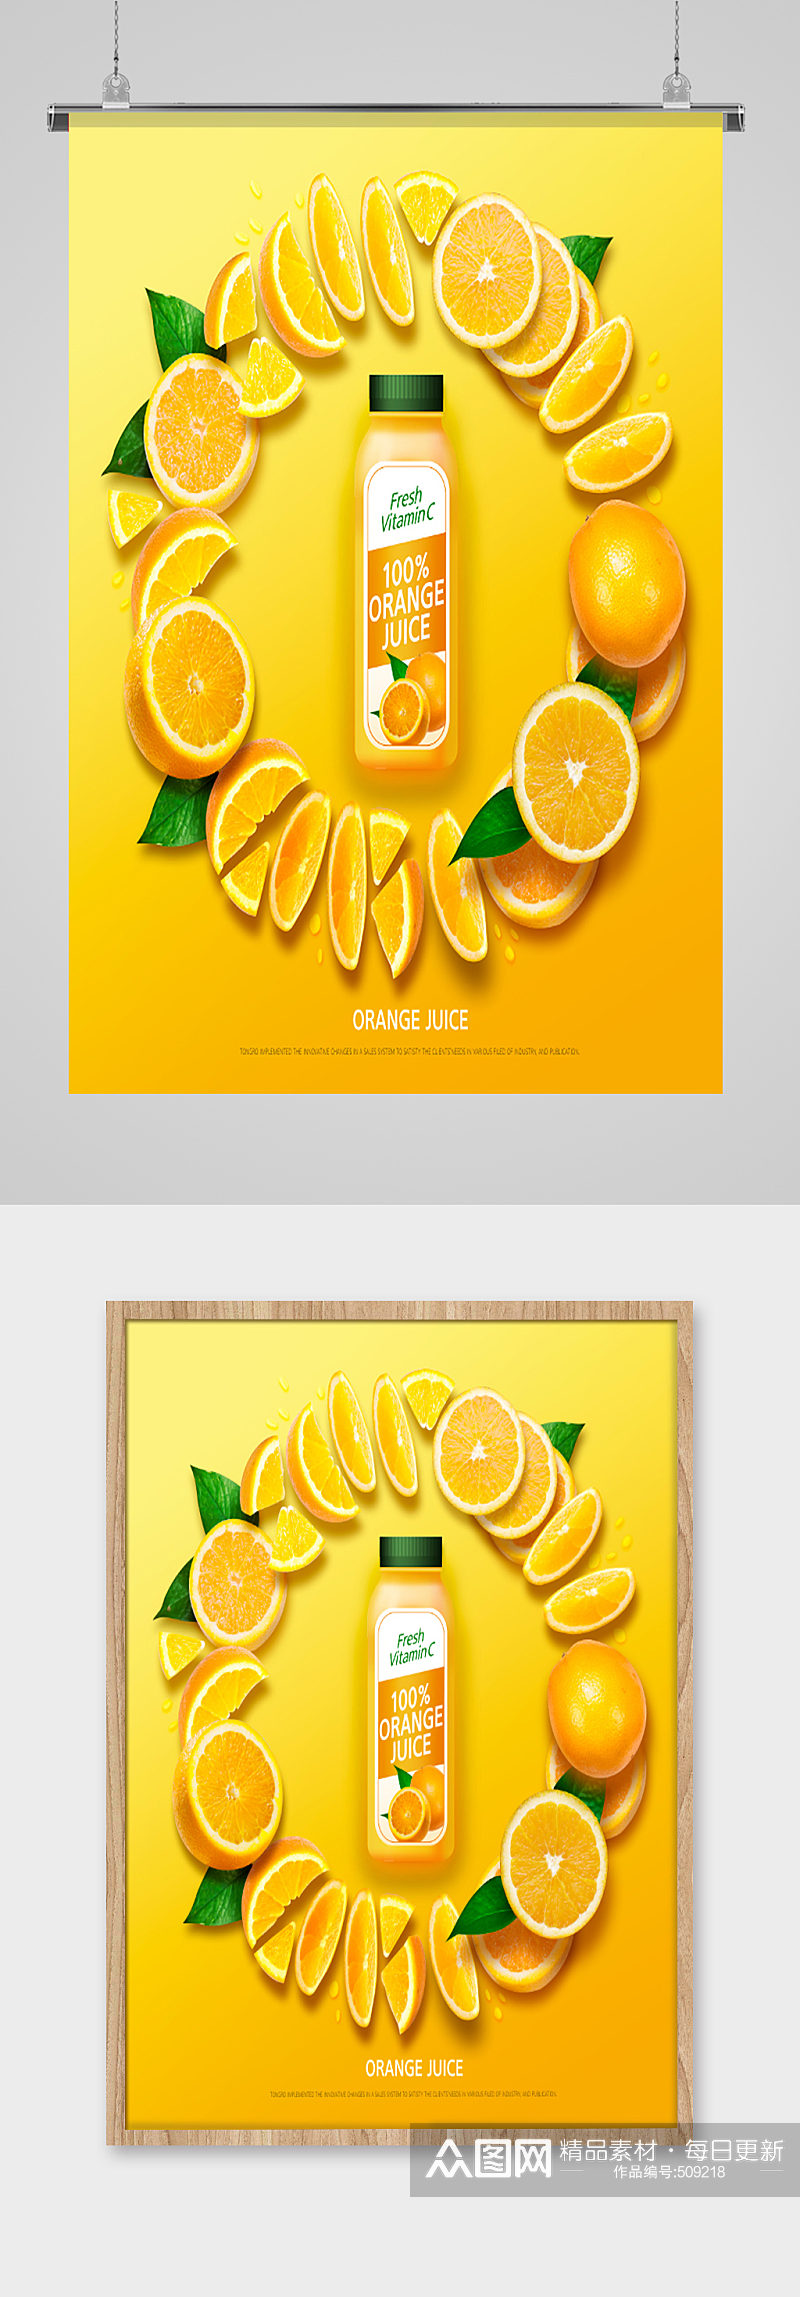 鲜橙汁果汁广告海报素材